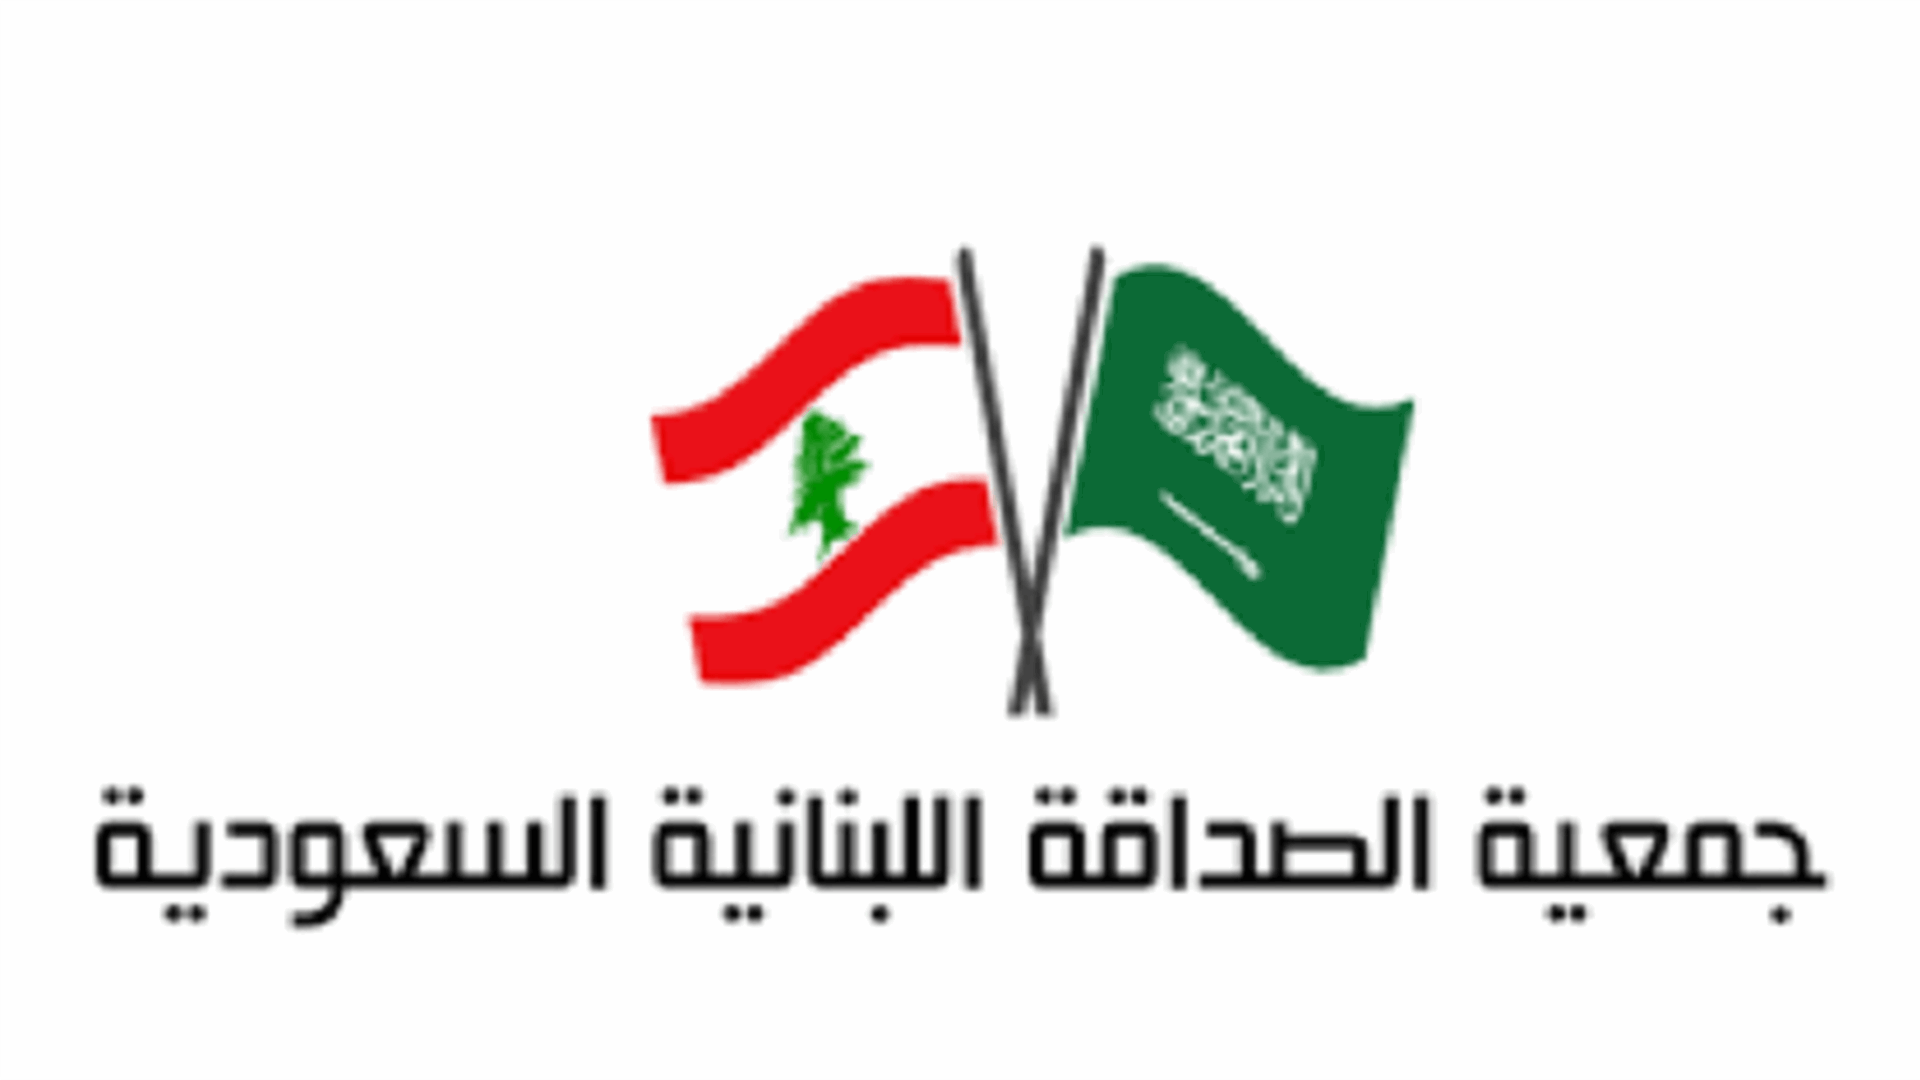 جمعية الصداقة اللبنانية السعودية: نتمنى على رئيس الجمهورية رفض الأمر الواقع الذي سيدمر البلد